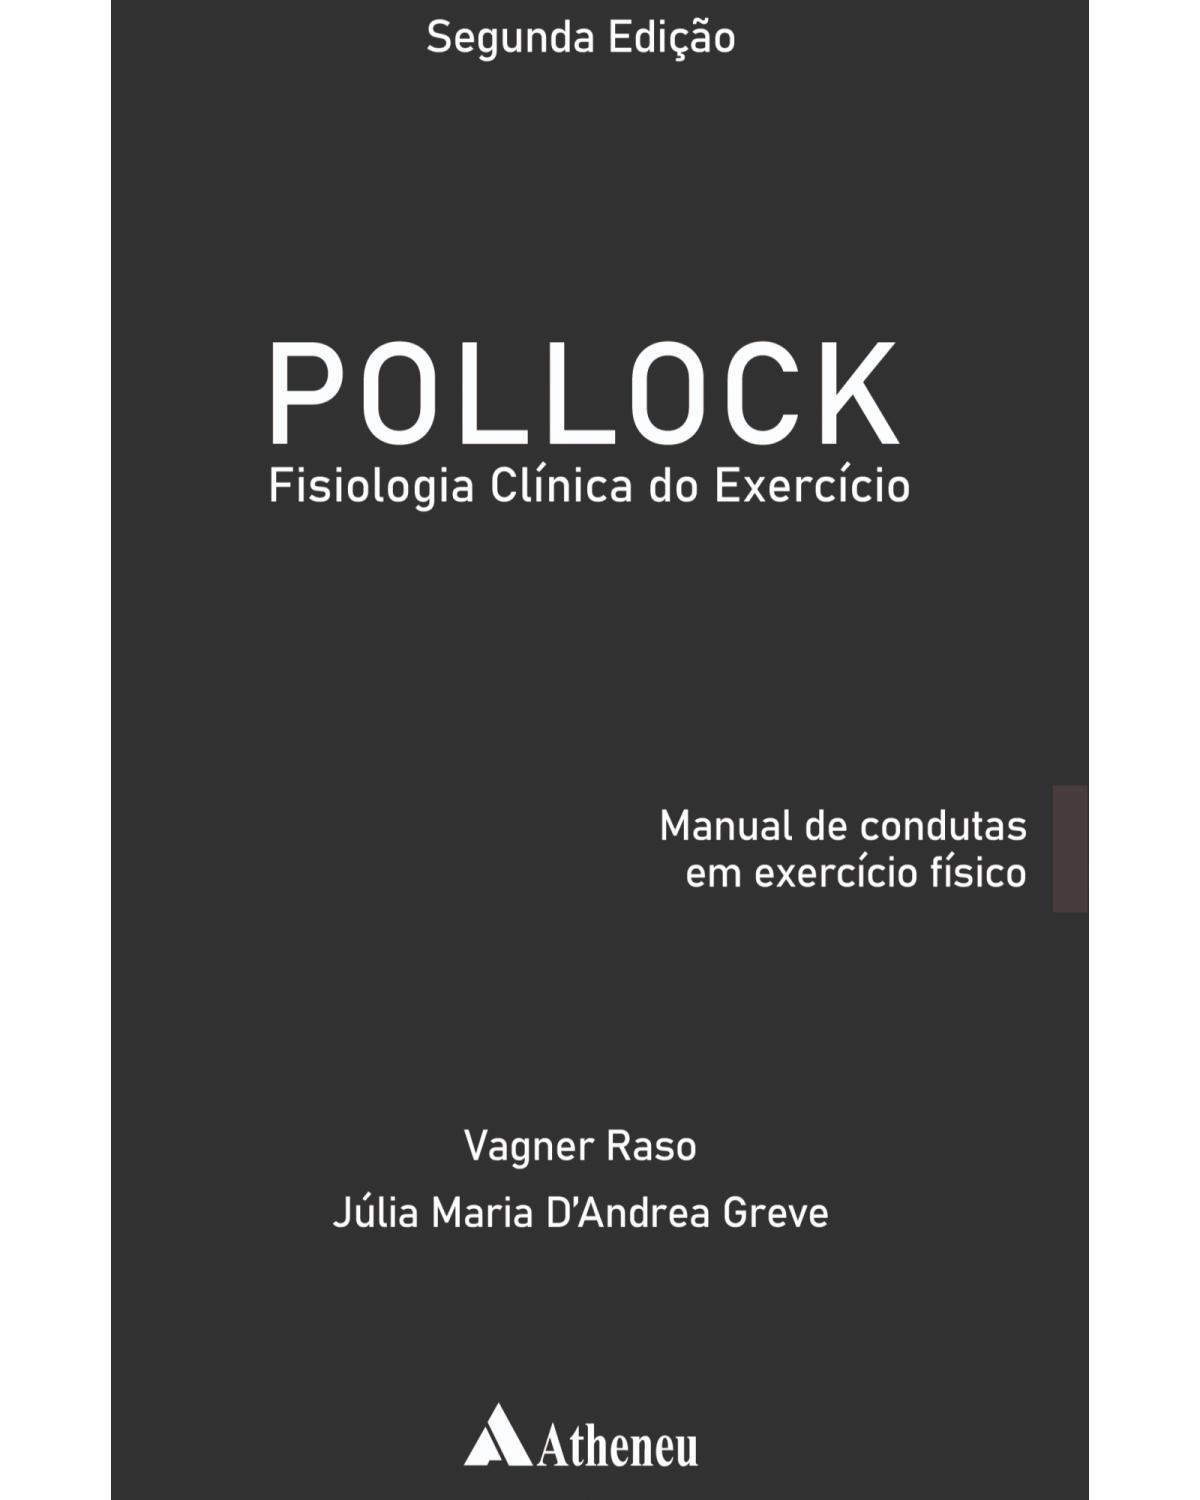 Pollock - Fisiologia clínica do exercício - manual de condutas em exercício físico - 2ª Edição | 2021